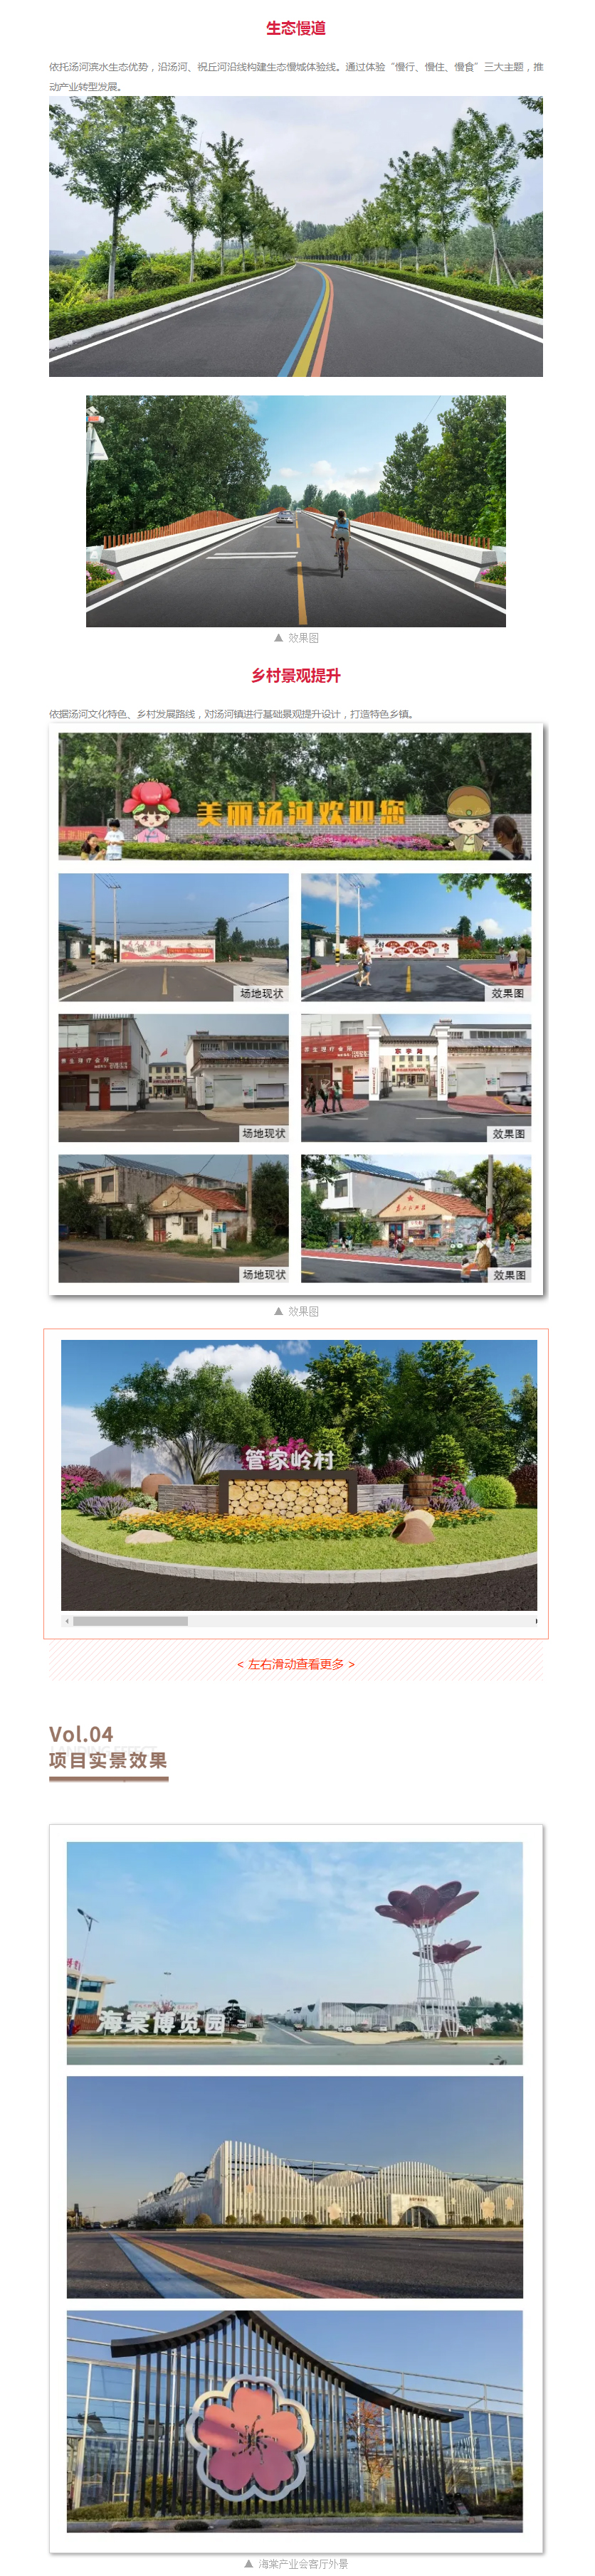 汤河镇乡村振兴示范片区规划设计33.jpg